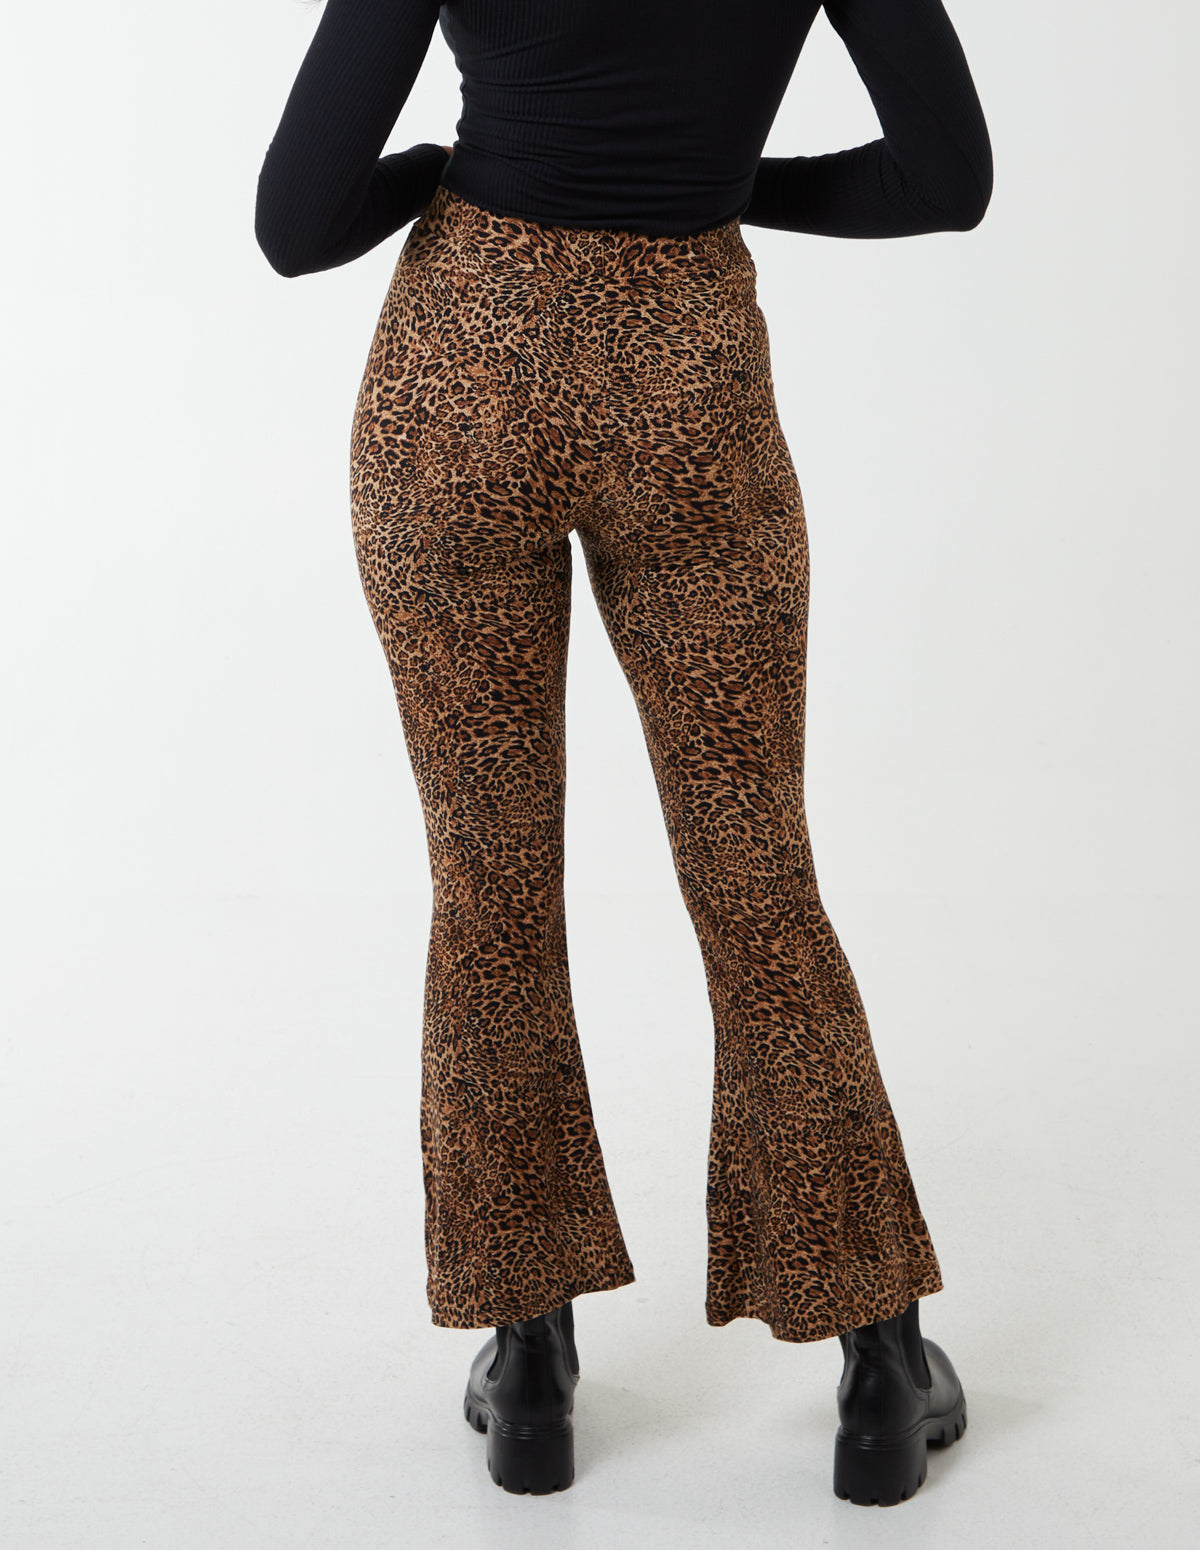 Tan, Leopard Print Flared Pants